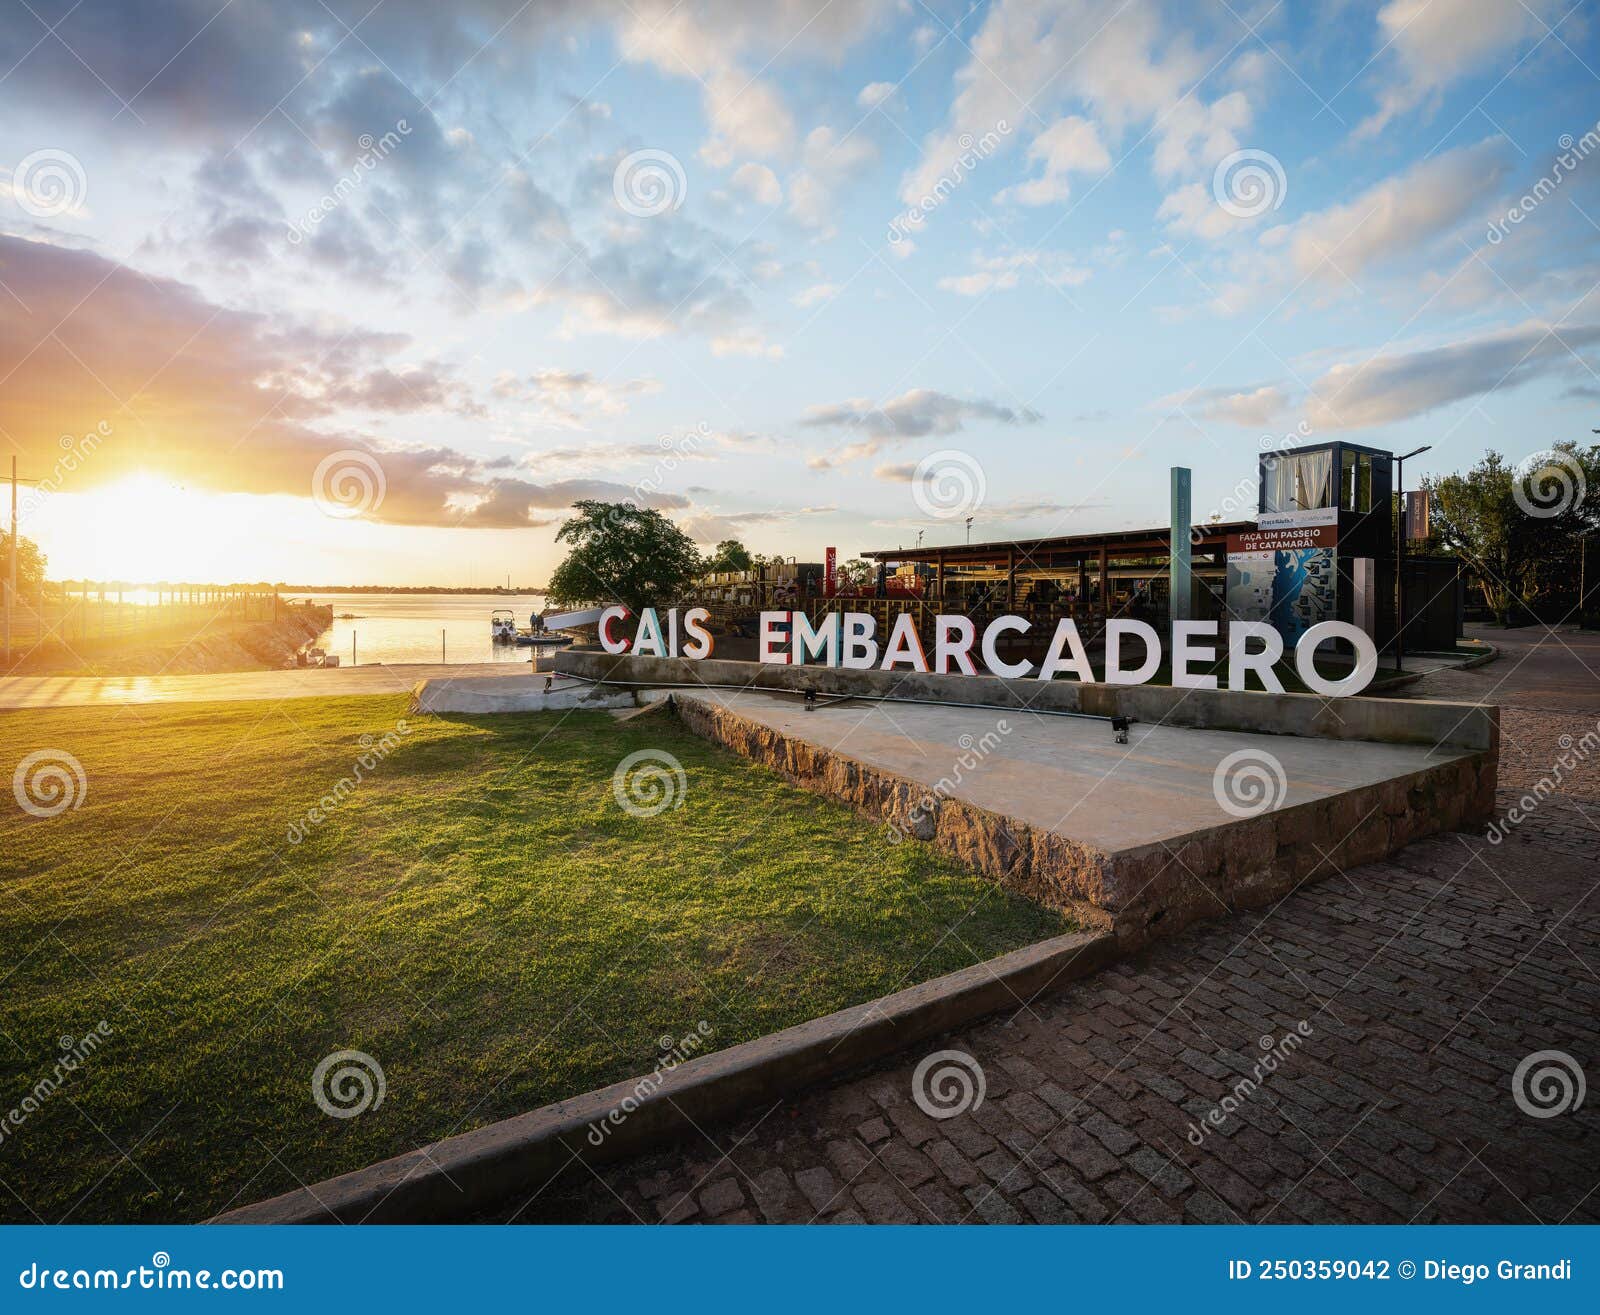 Cais Embarcadero: ponto de encontro de Porto Alegre e o Guaíba